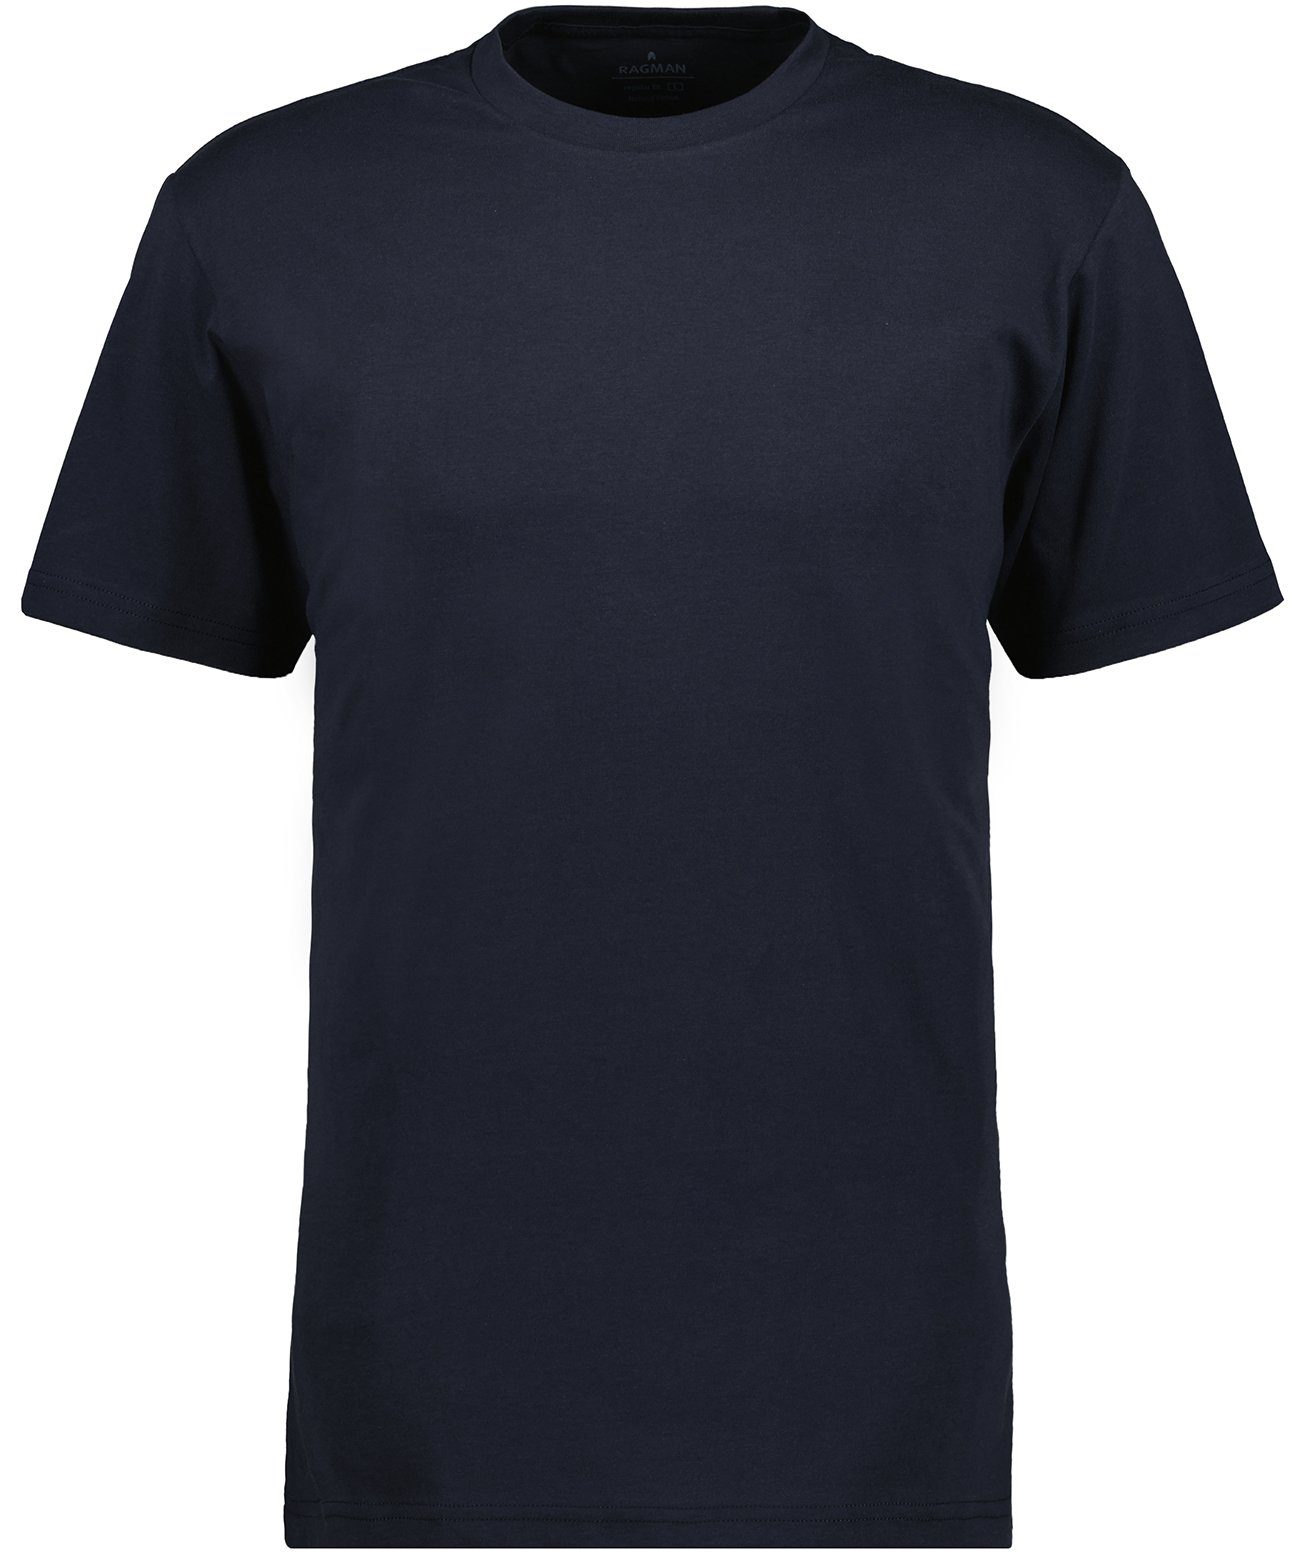 RAGMAN T-Shirt Marineblau